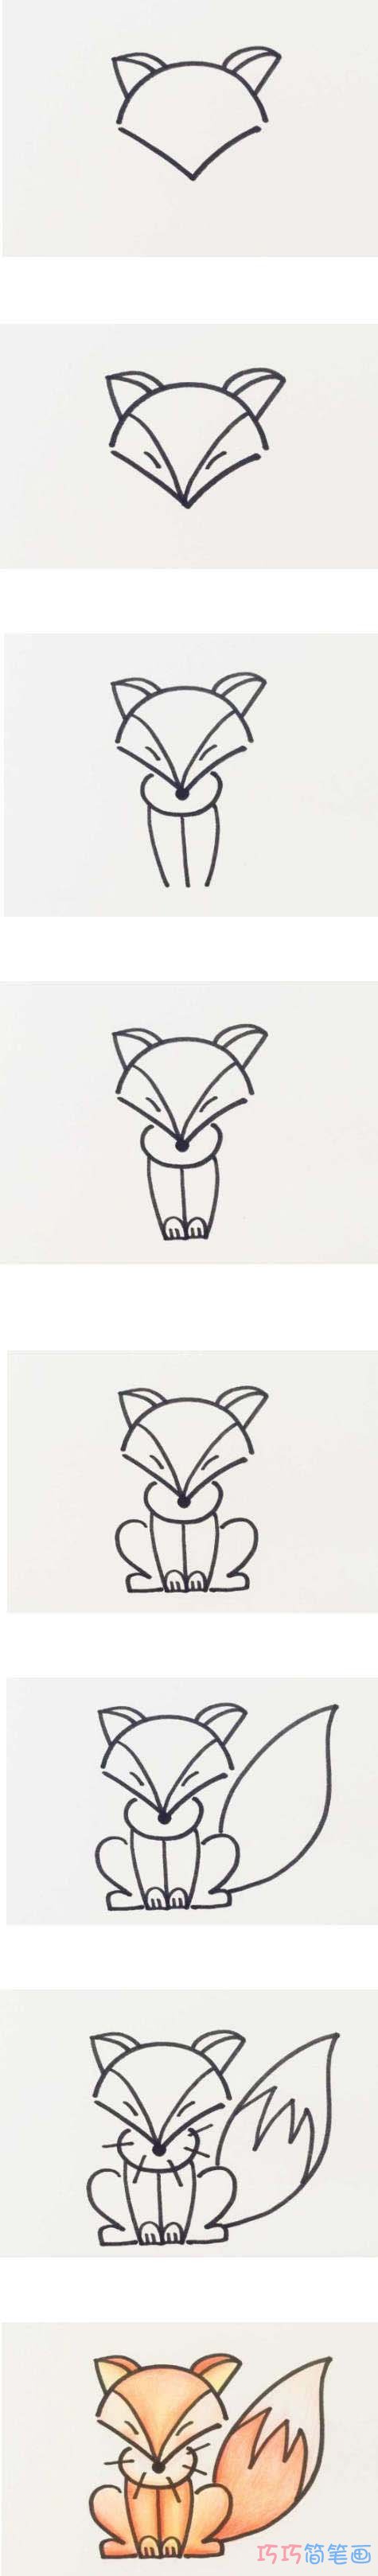 小学生简单狐狸的画法步骤教程涂颜色